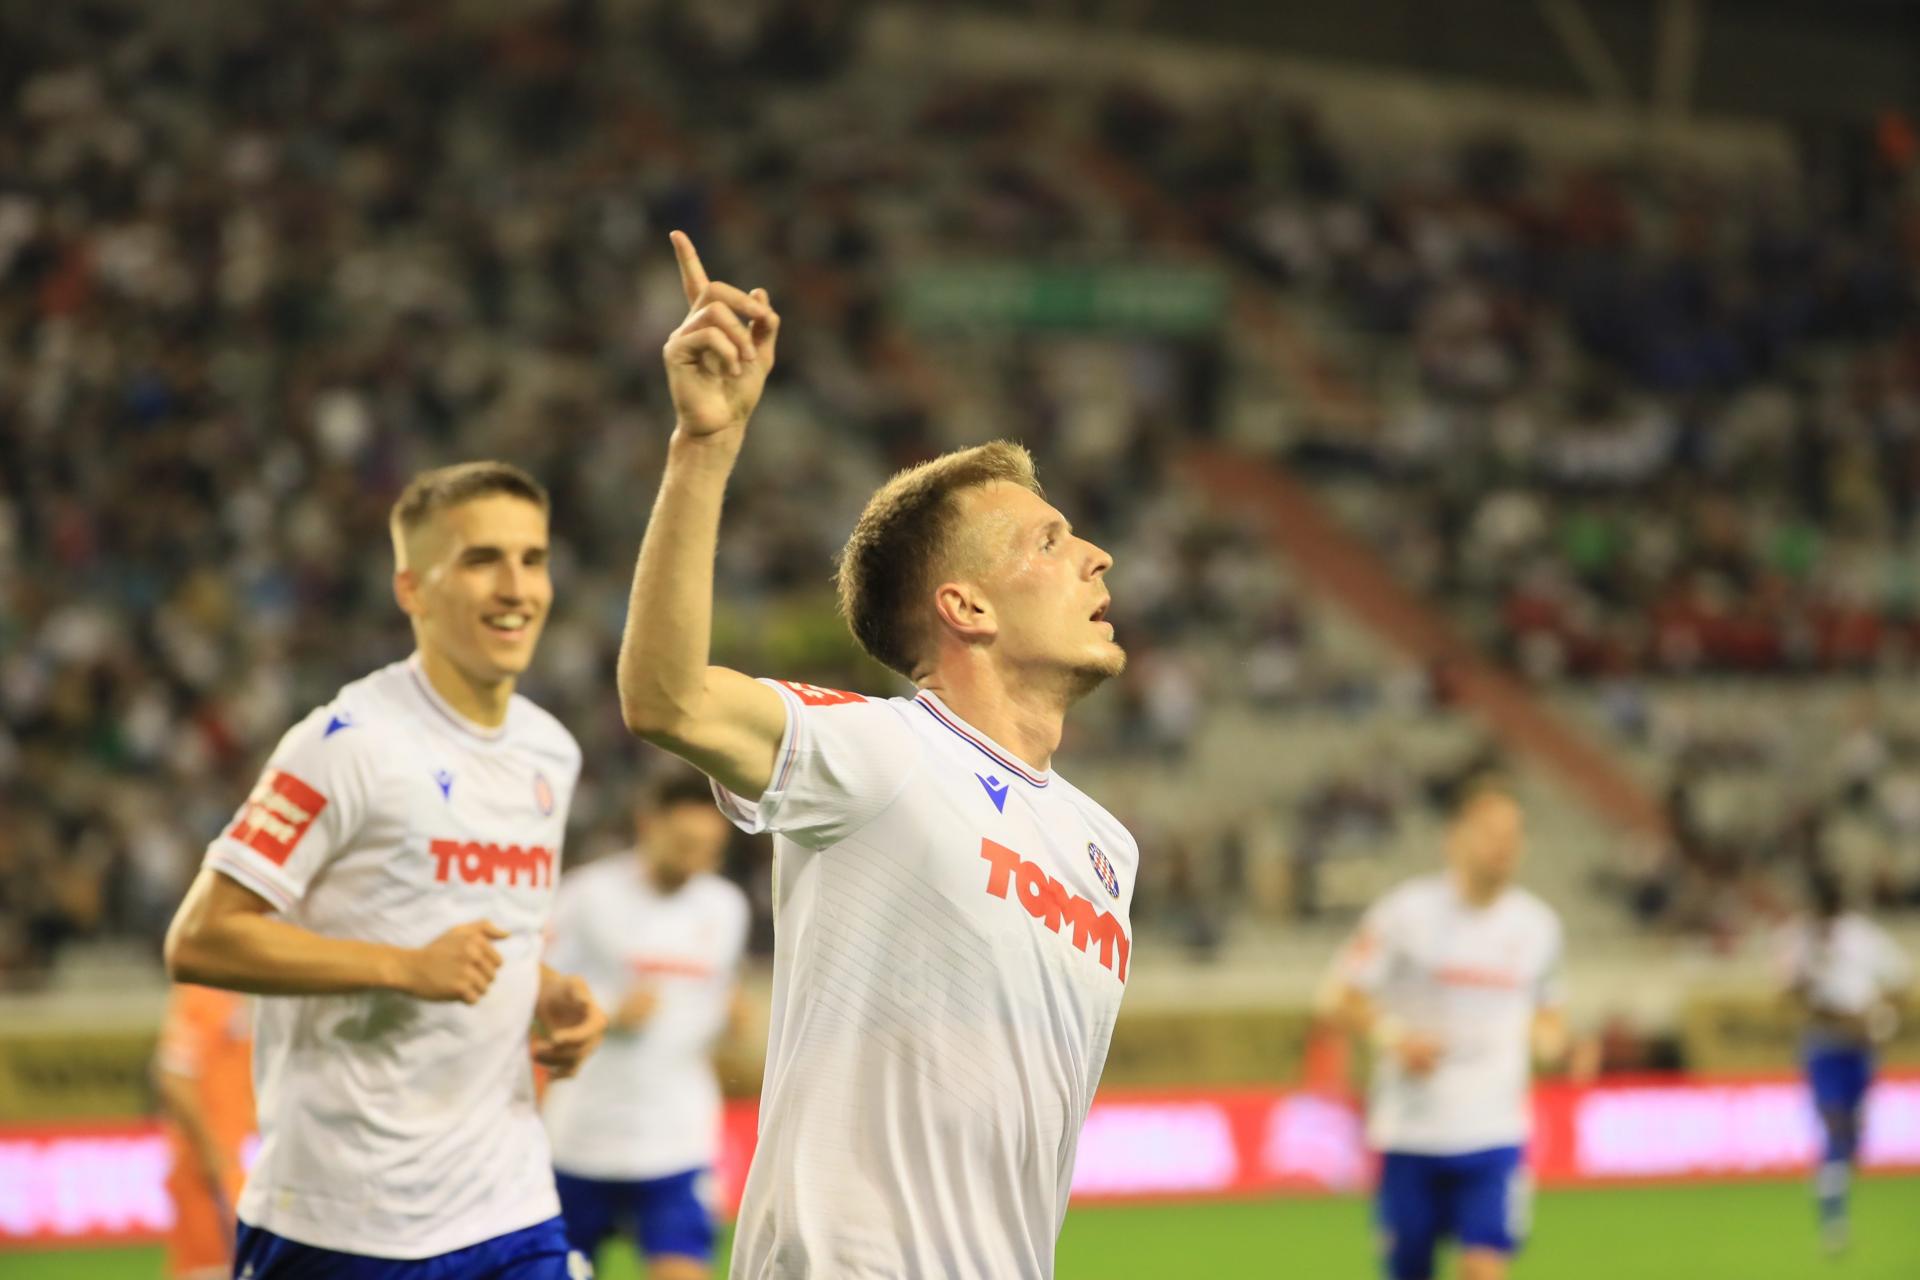 Slobodna Dalmacija - Hajduk nakon drame u Varaždinu došao do nove